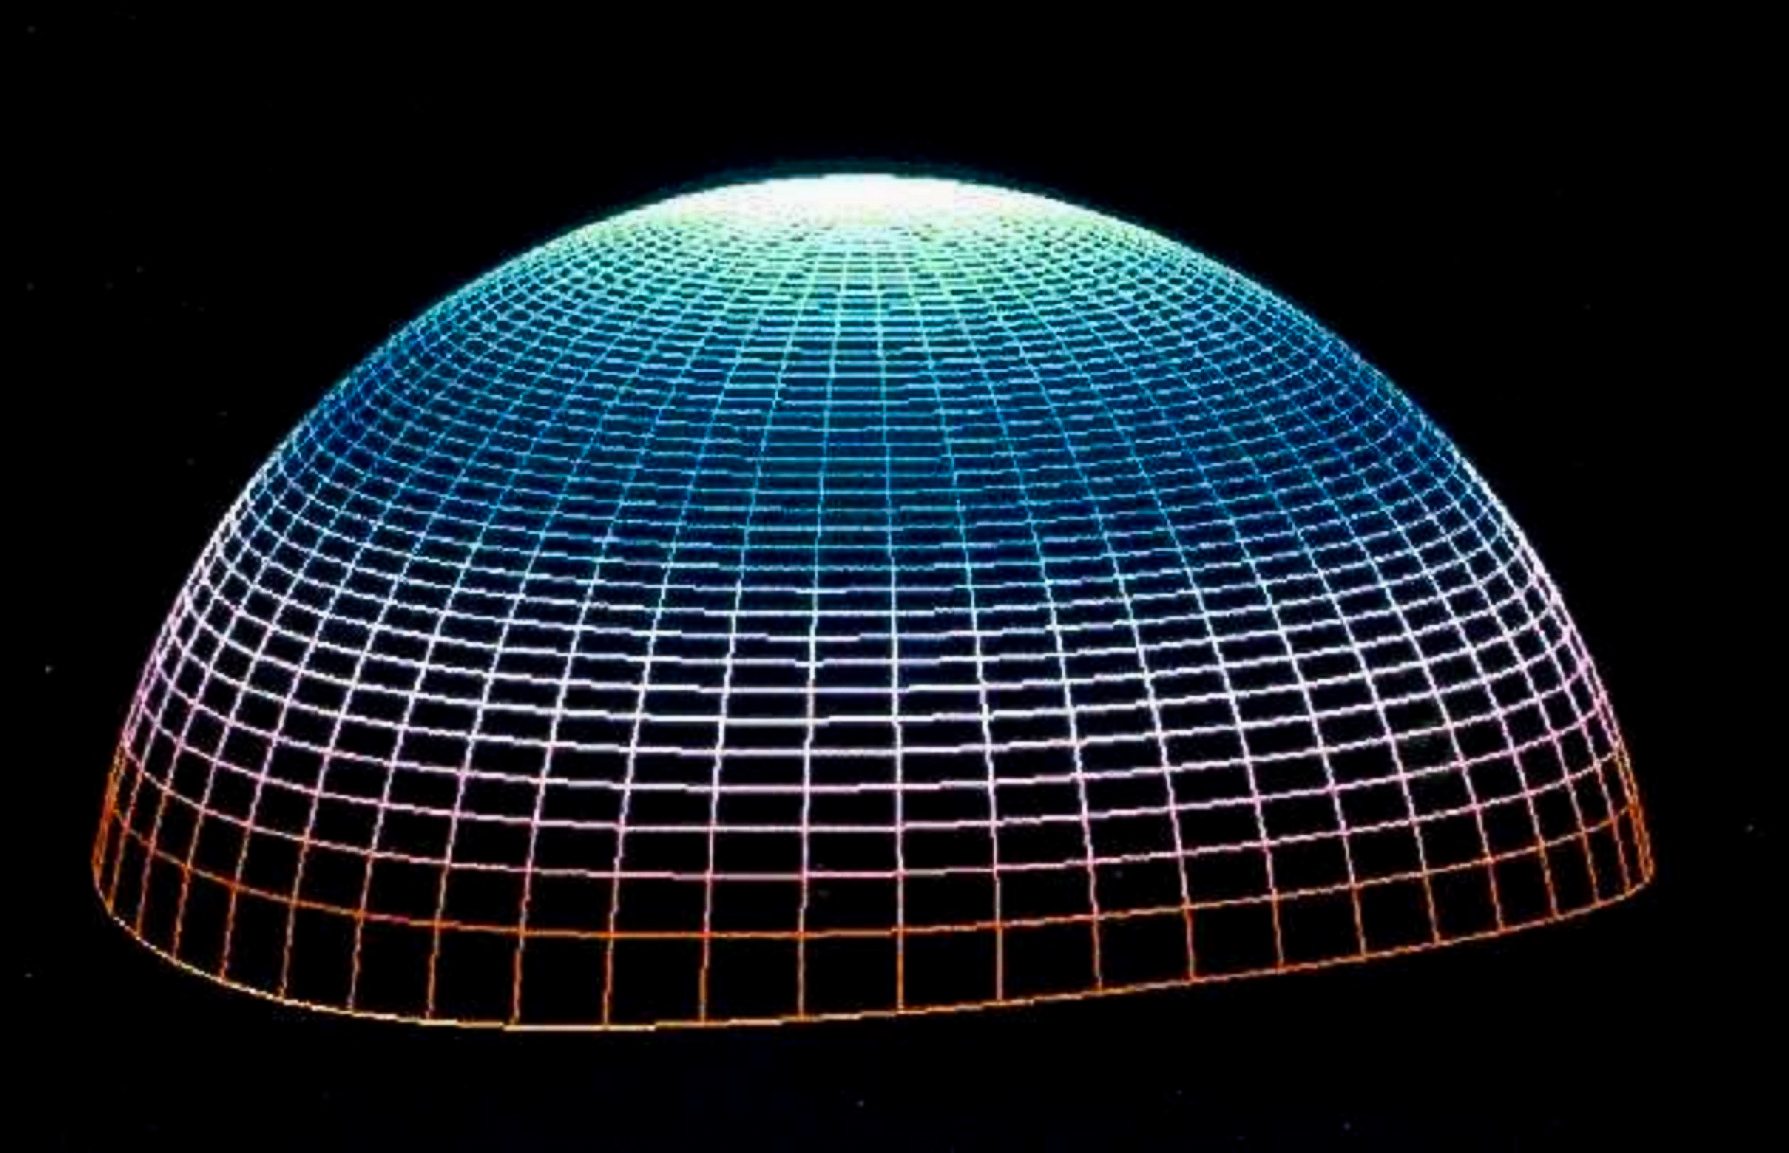 Ez az objektív majdnem tökéletes ellipszoid volt. Egy felület háromdimenziós megjelenítése, amely minden szakaszból áll.